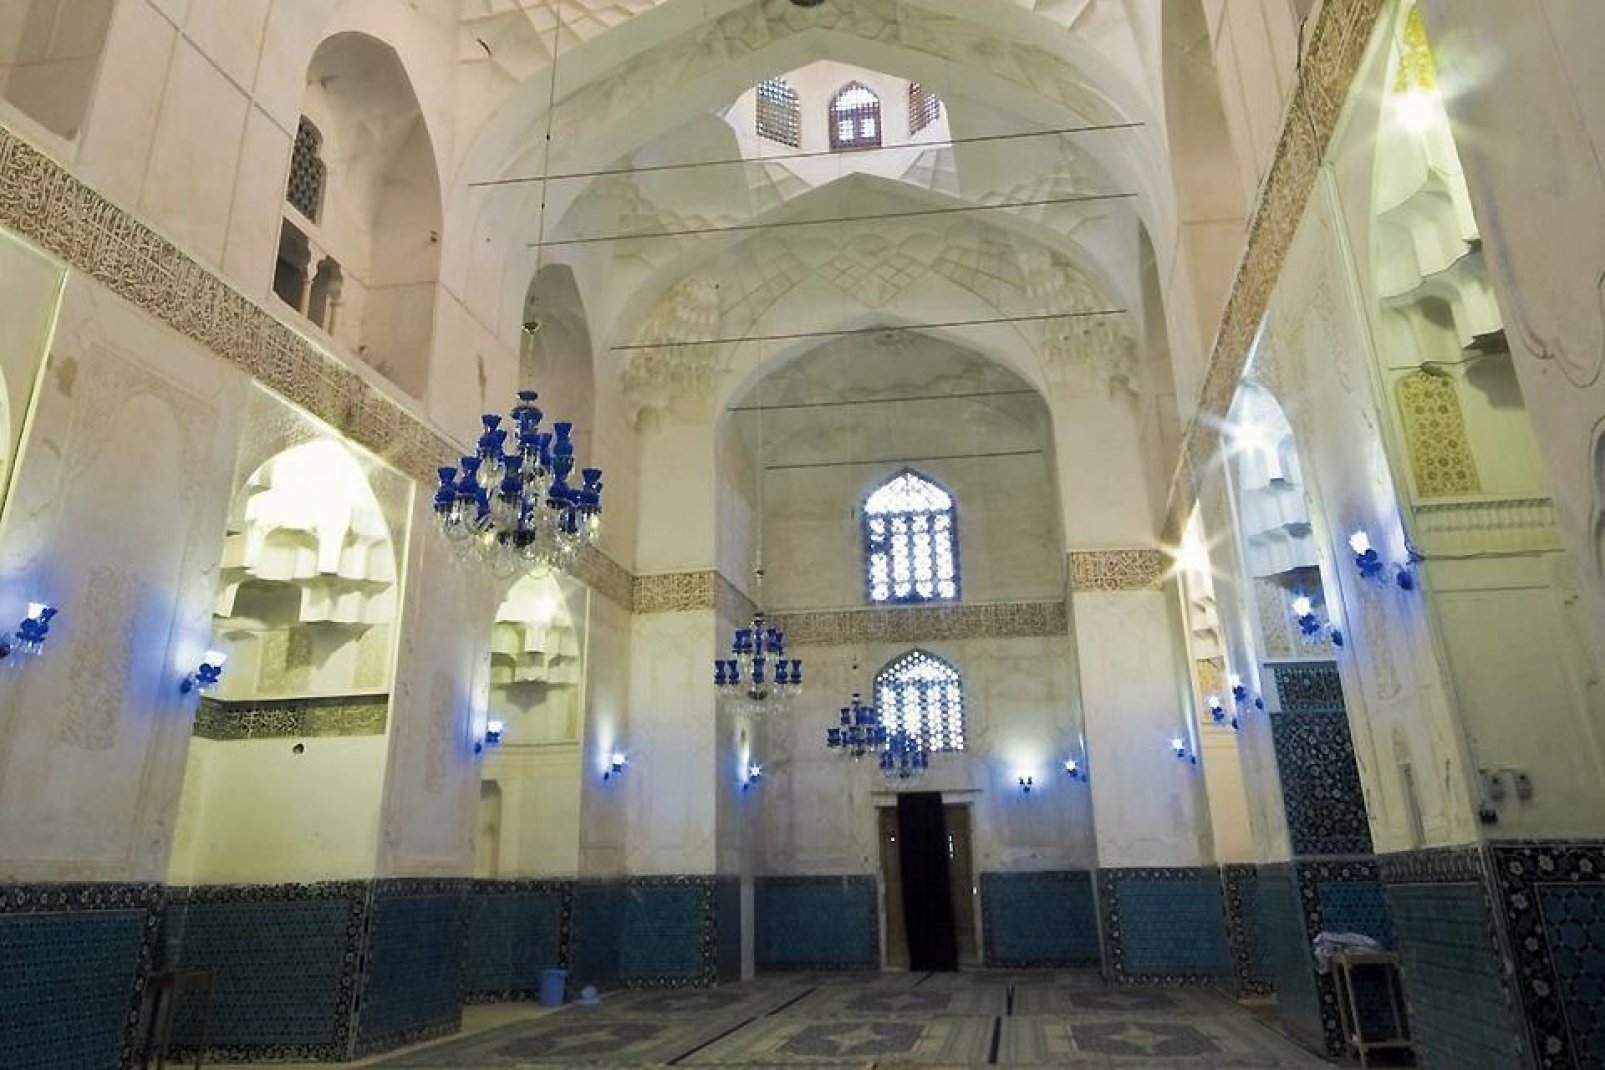 Kerman befindet sich etwas abseits der traditionellen Touristenorte. Man sollte dieser Stadt jedoch einen Besuch abstatten, um die zahlreichen Moscheen aus verschiedenen Zeitepochen zu entdecken.